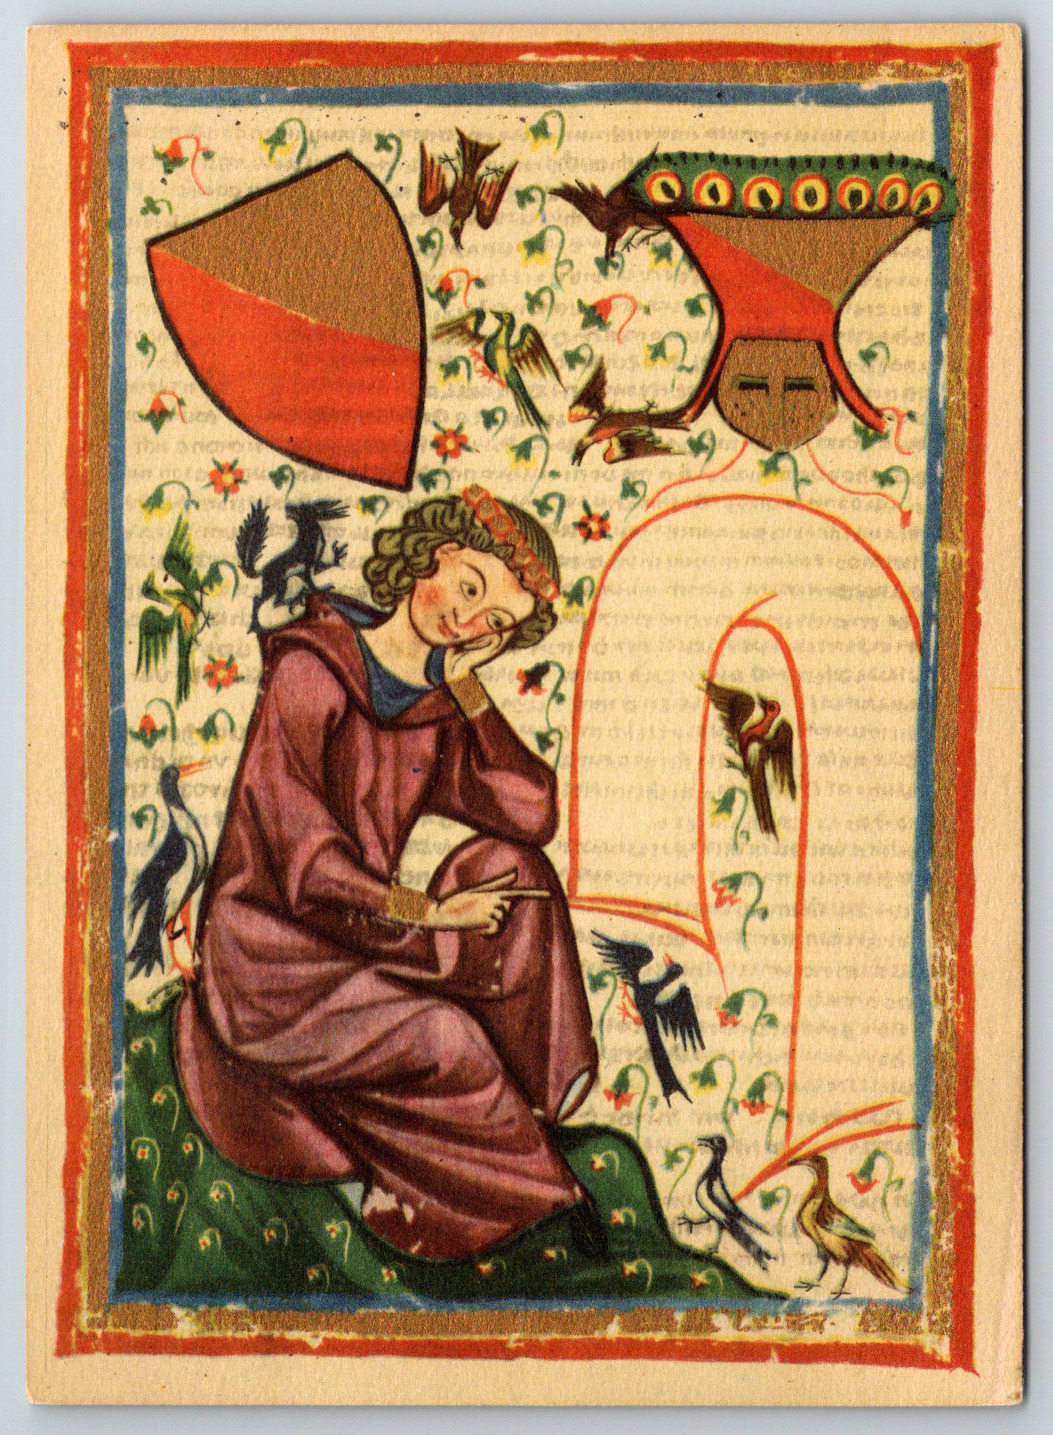 Medieval Herr Heinrich von Veldecke 1173-1194 Art Vintage Postcard